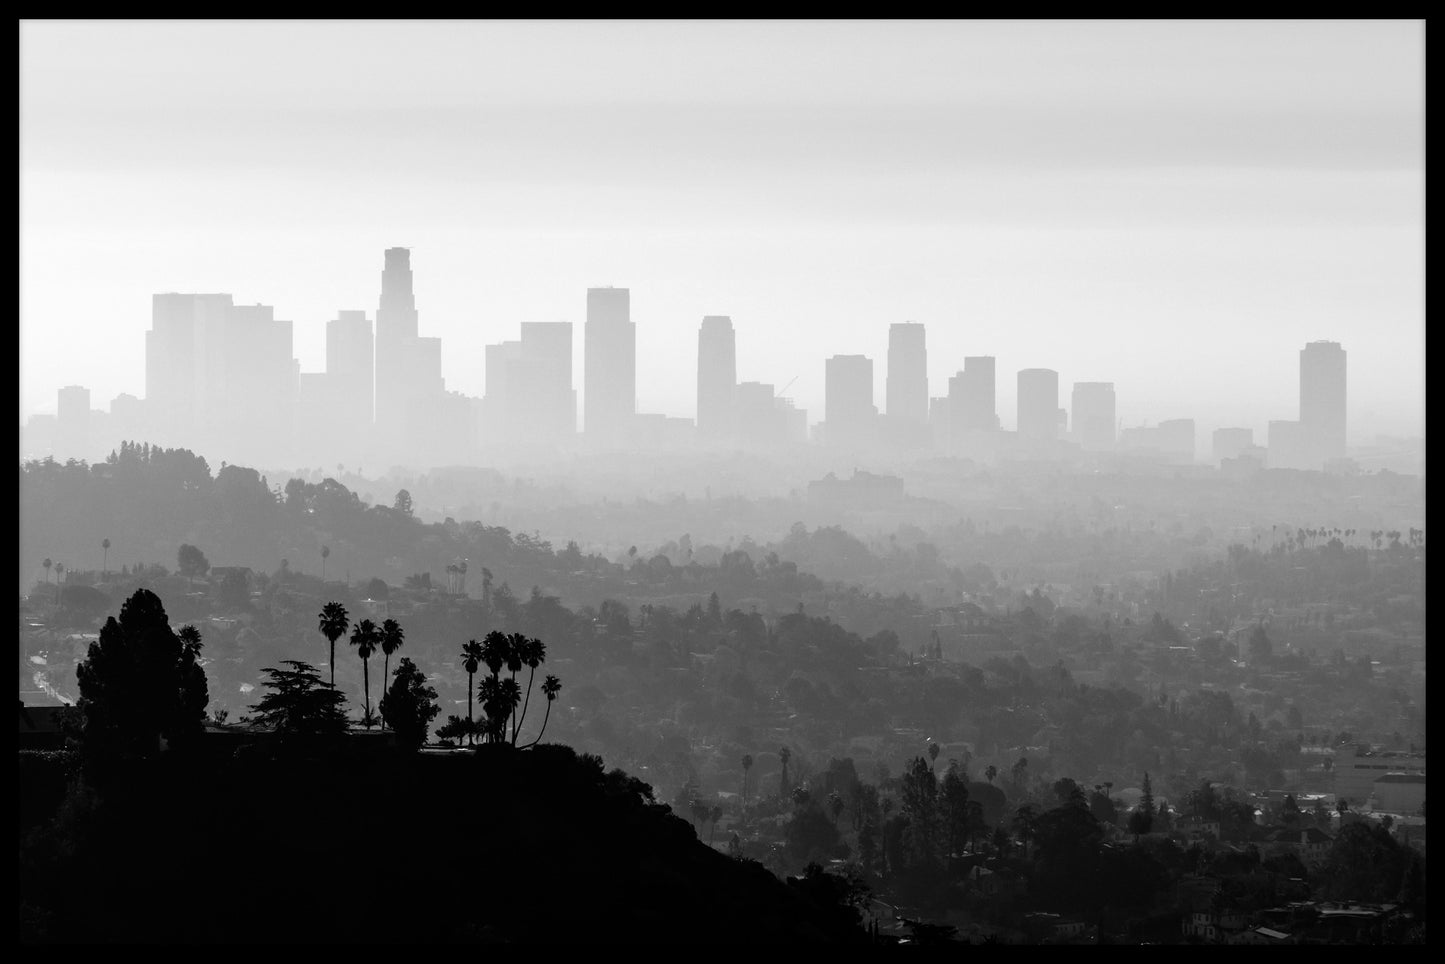  Los Angeles smog rekorder